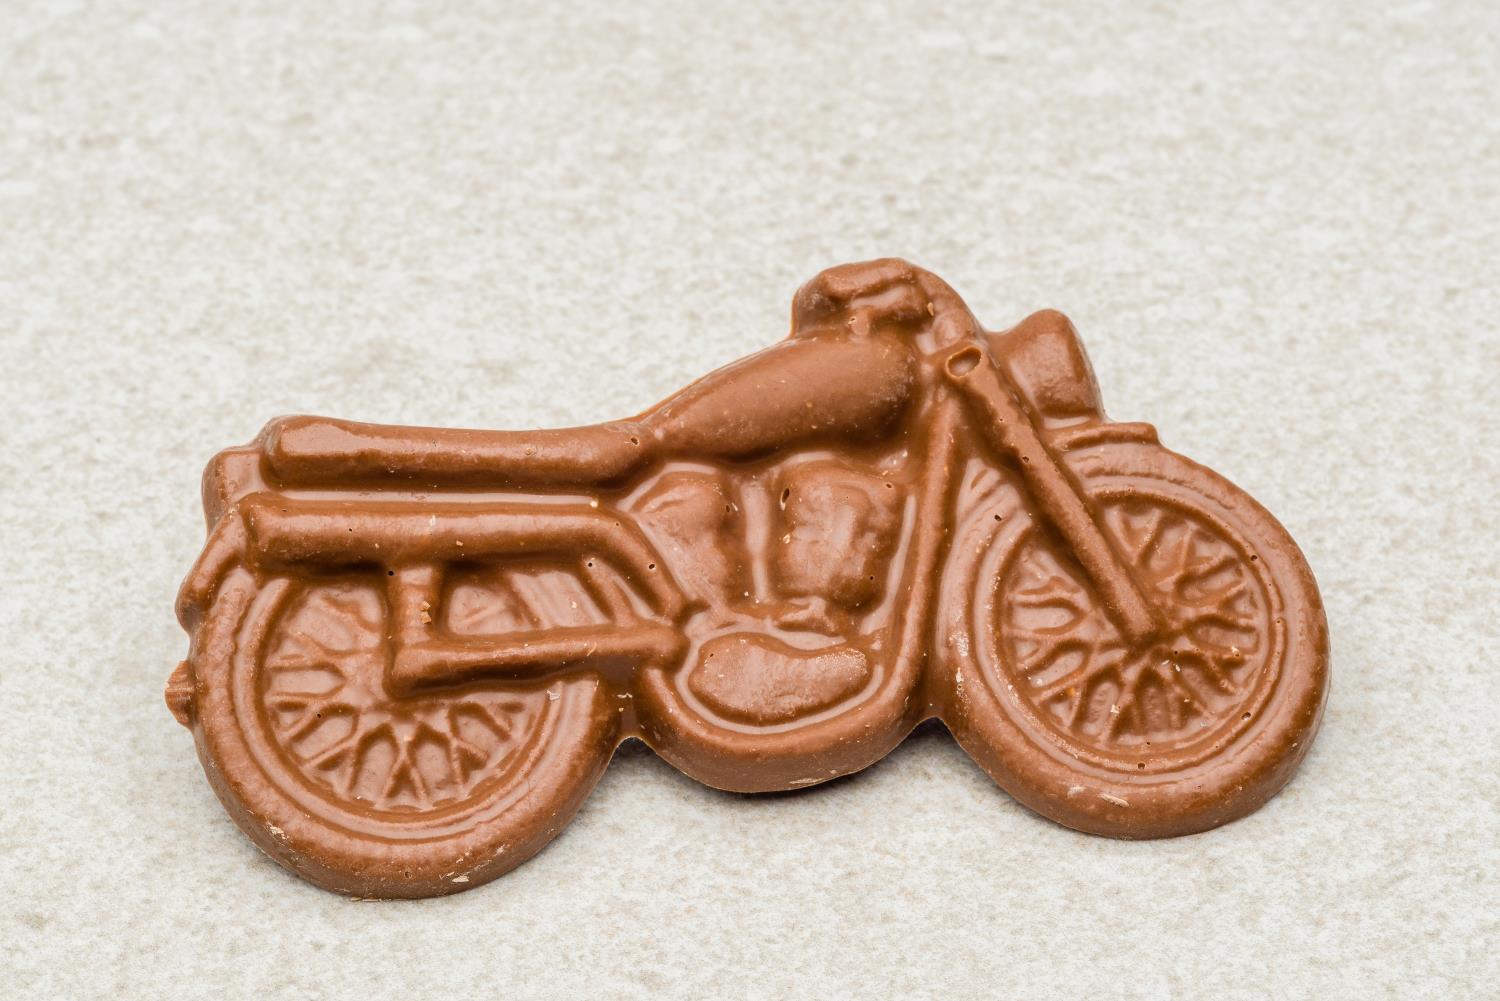 Moped melkesjokolade